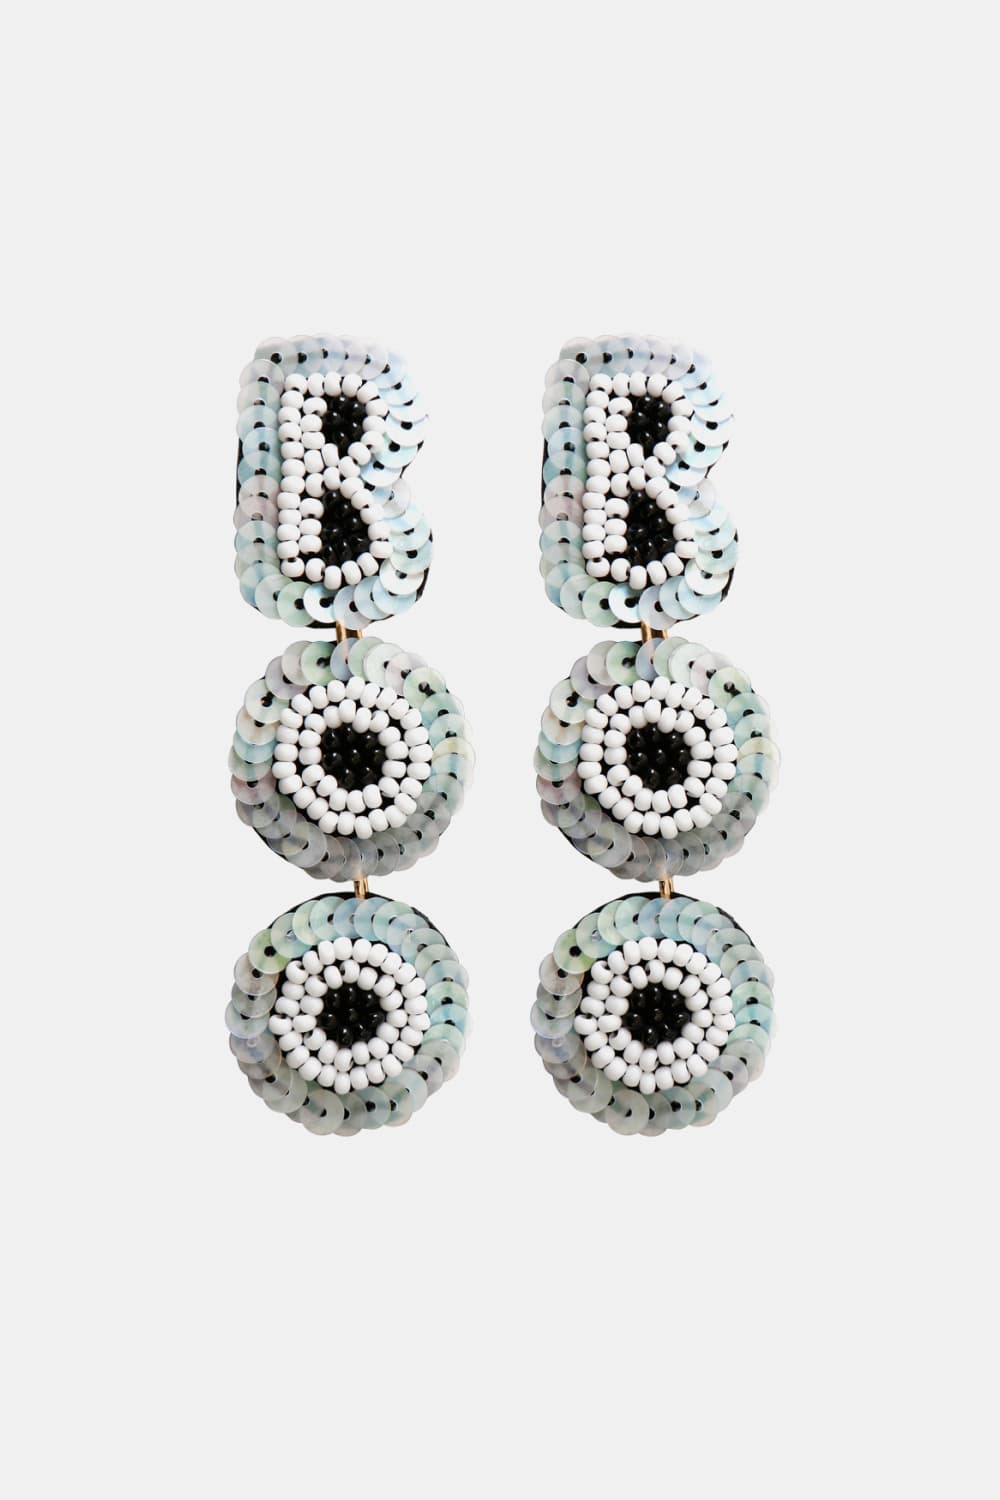 BOO Beaded Dangle Earrings - White / One Size - Women’s Jewelry - Earrings - 4 - 2024